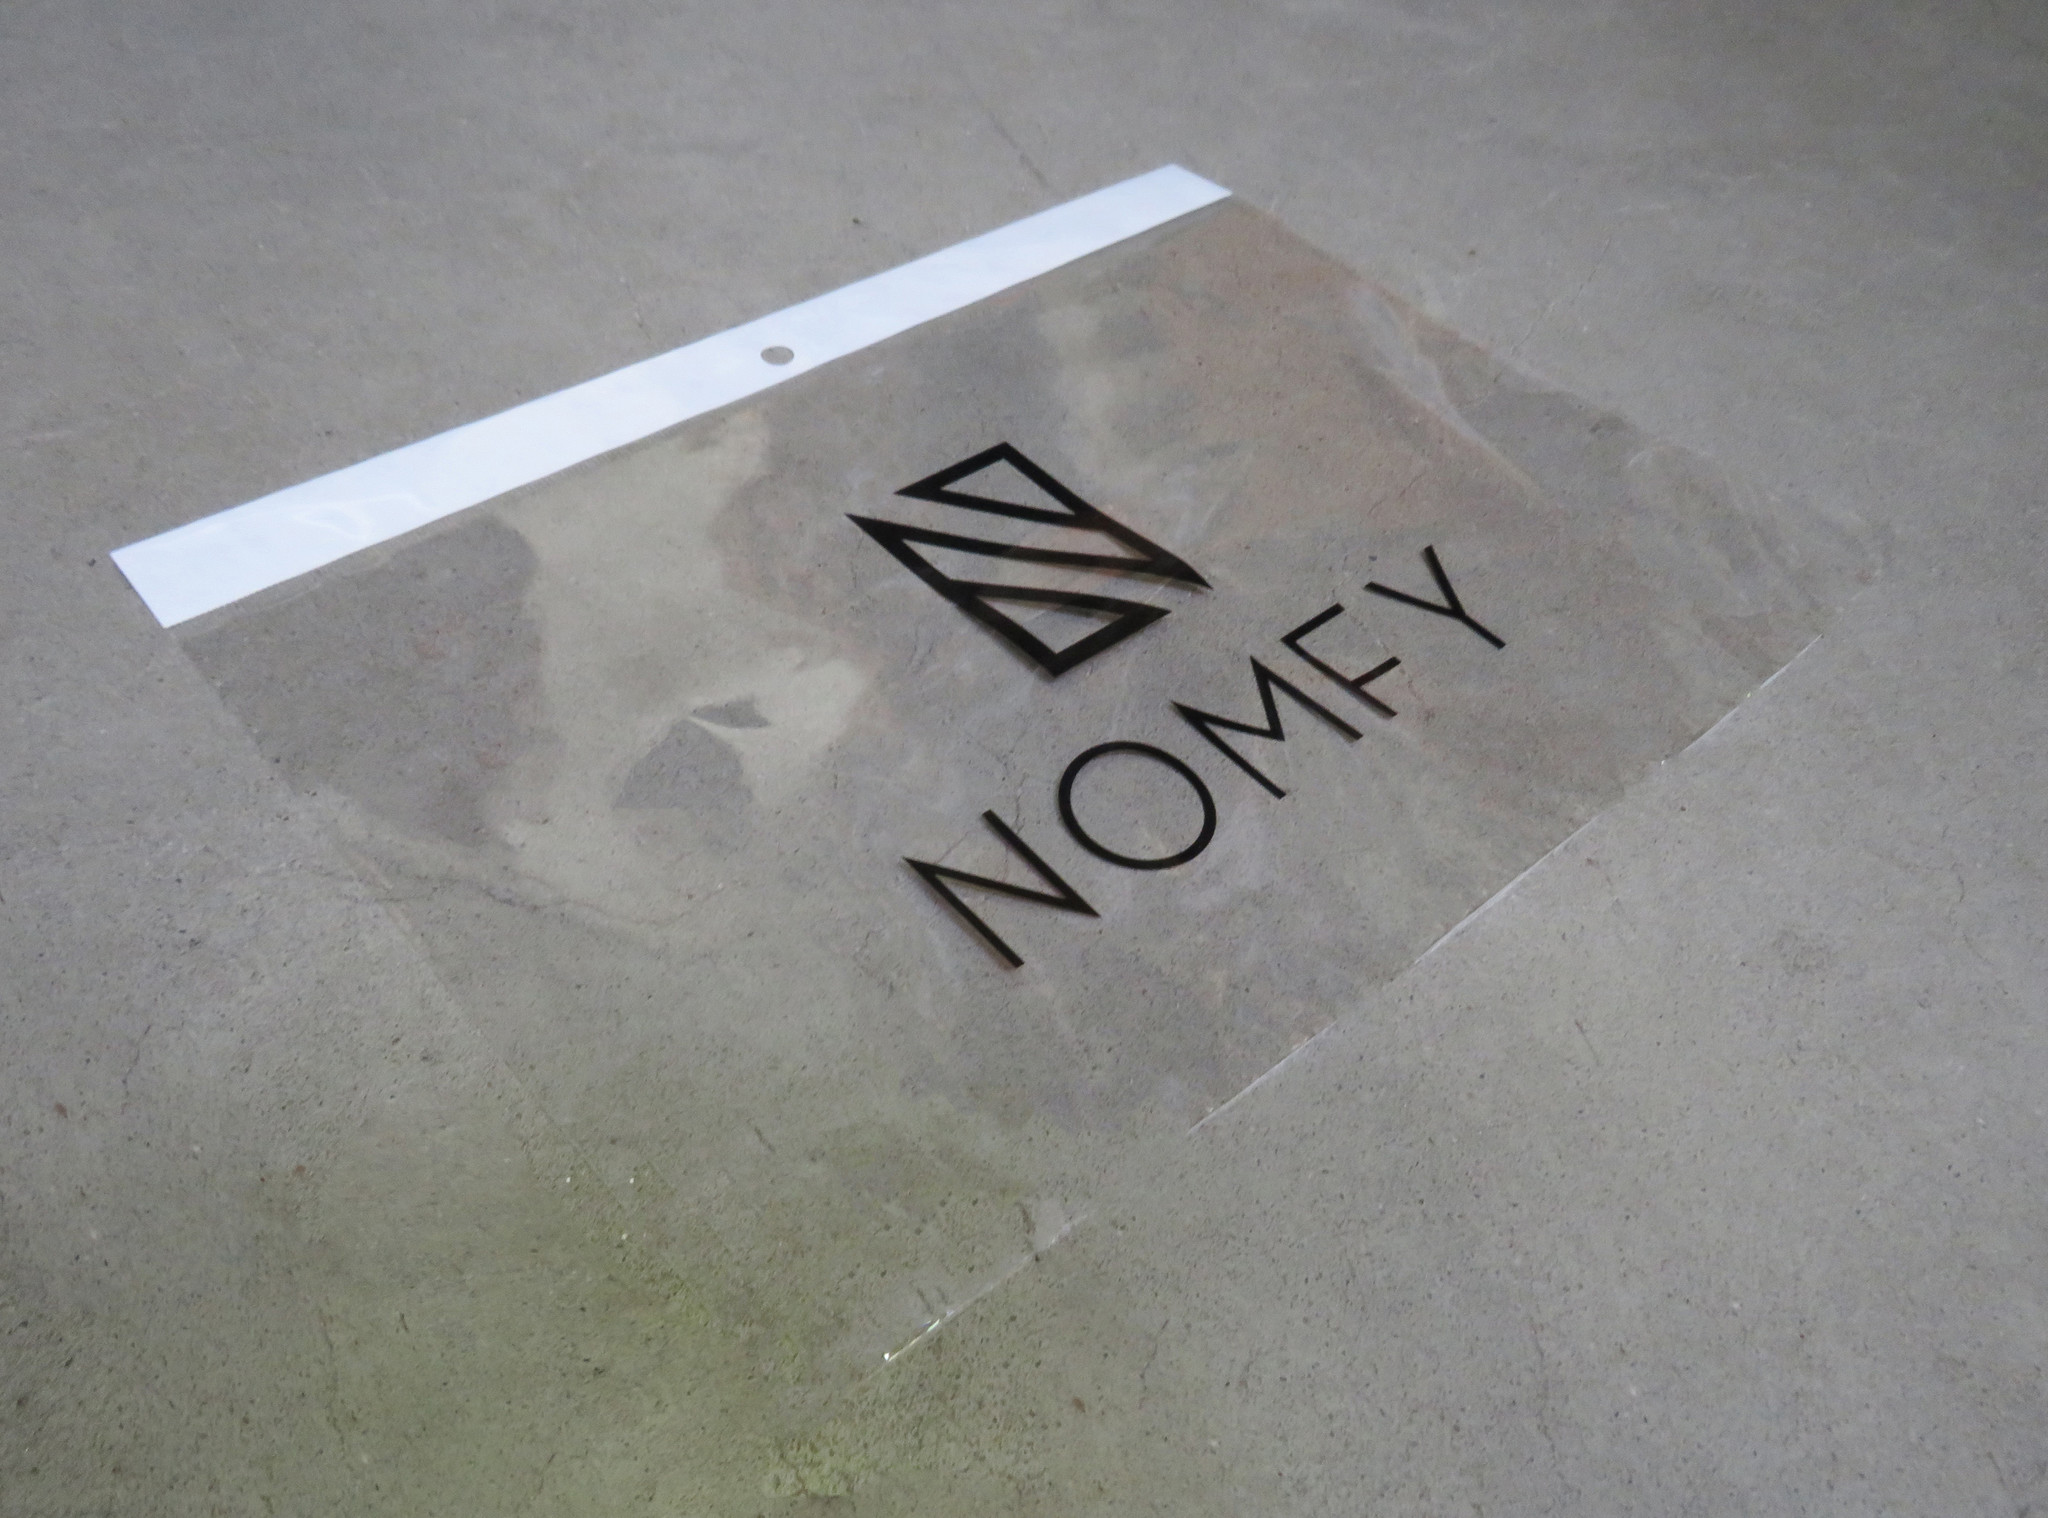 Nomfy Nomfy iPad Pro 12.9 2020 Screenprotector - 2 PACK